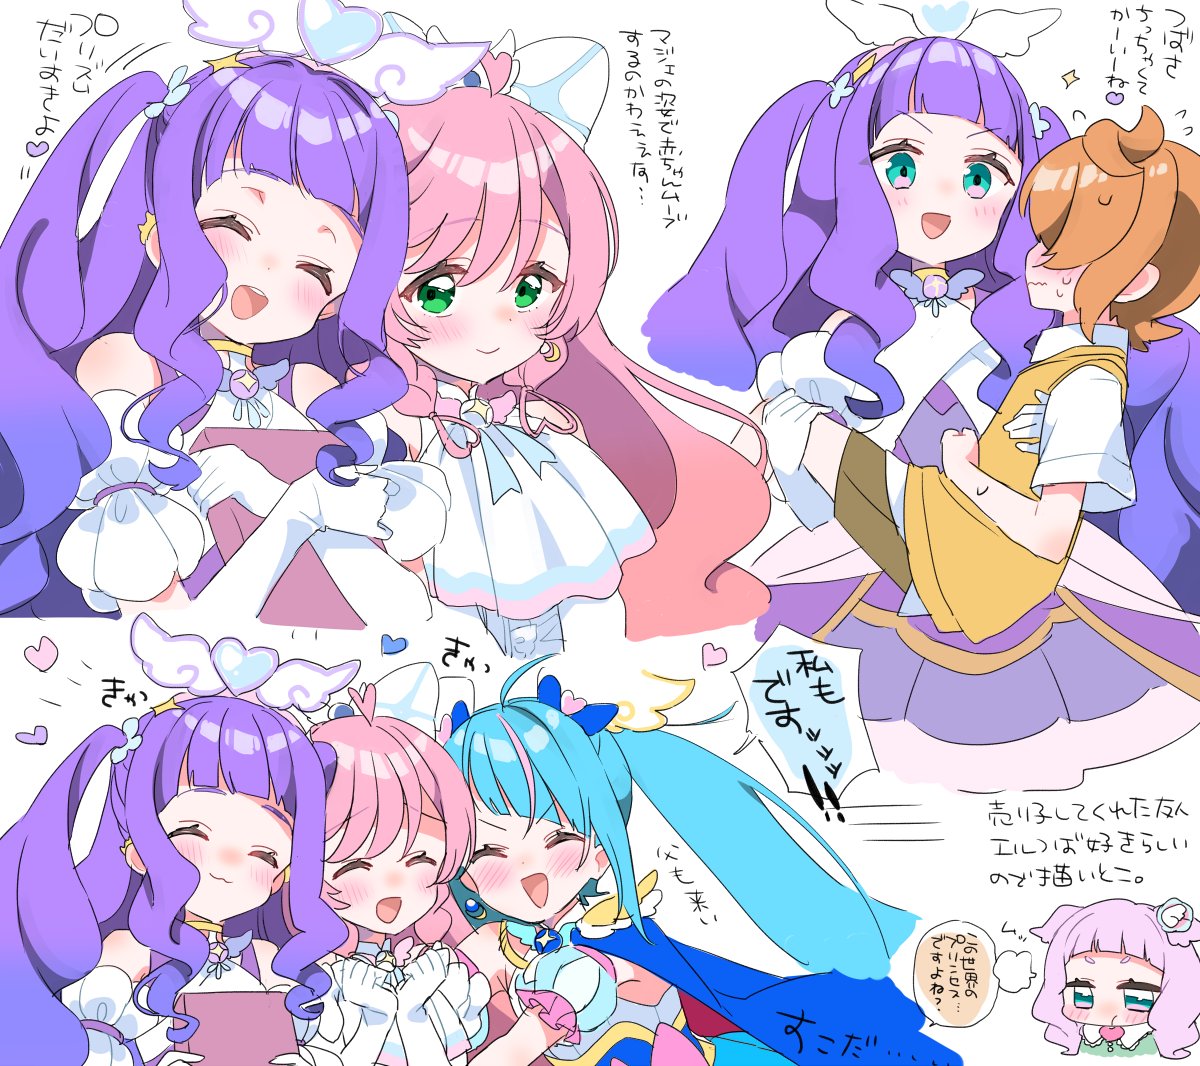 sora harewataru, nijigaoka mashiro, cure sky, cure prism, yuunagi tsubasa,  and 2 more (precure and 1 more) drawn by izumi_kirifu